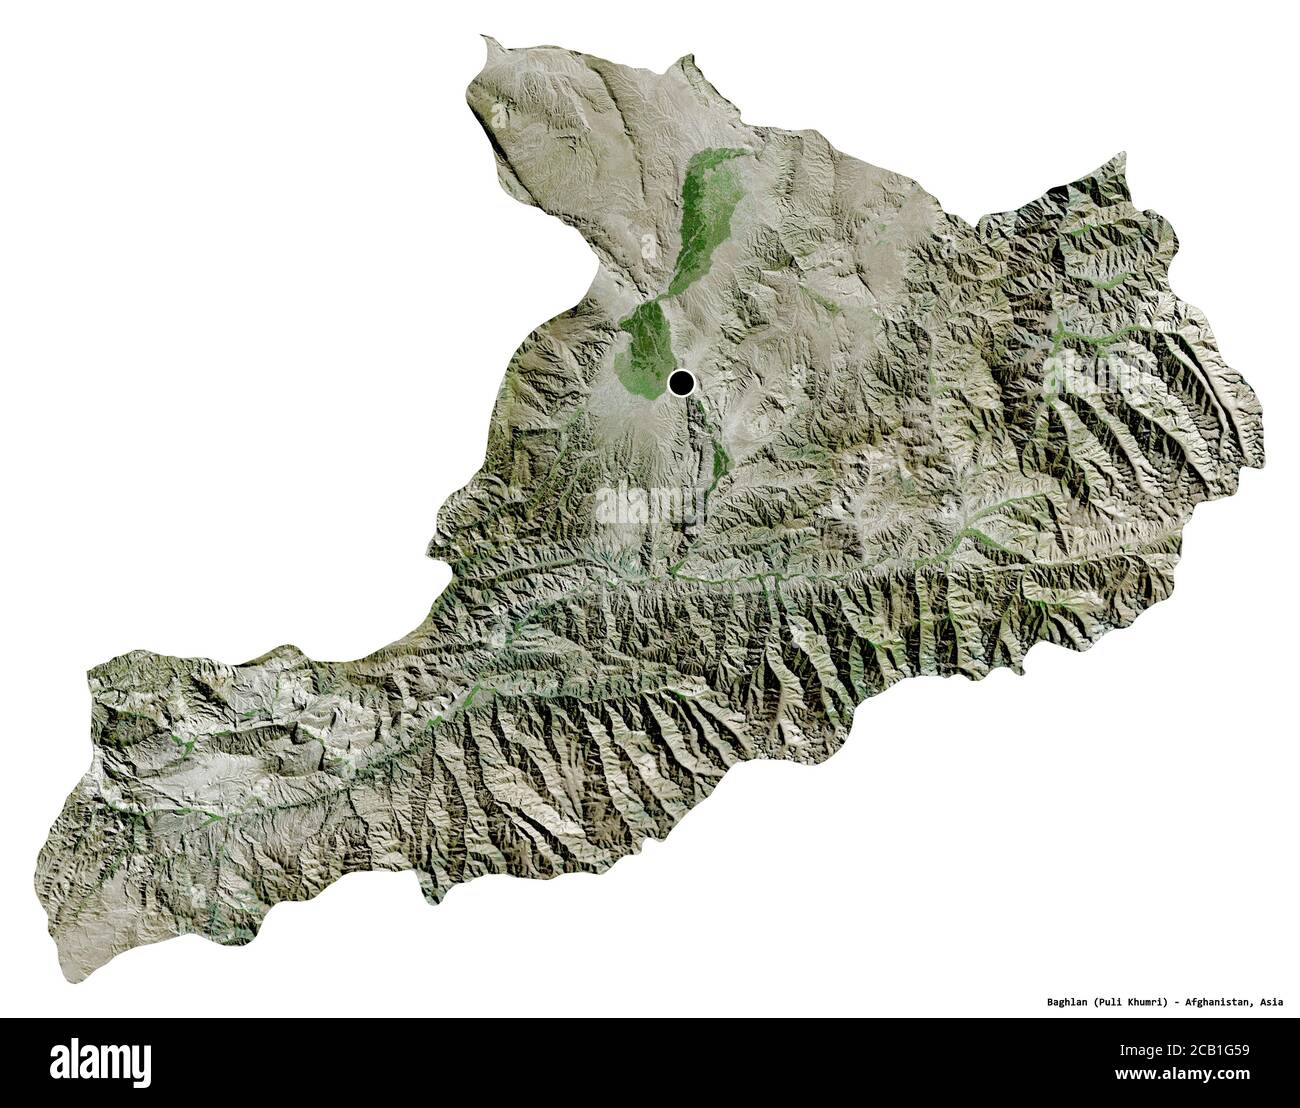 Forma di Baglan, provincia dell'Afghanistan, con la sua capitale isolata su sfondo bianco. Immagini satellitari. Rendering 3D Foto Stock